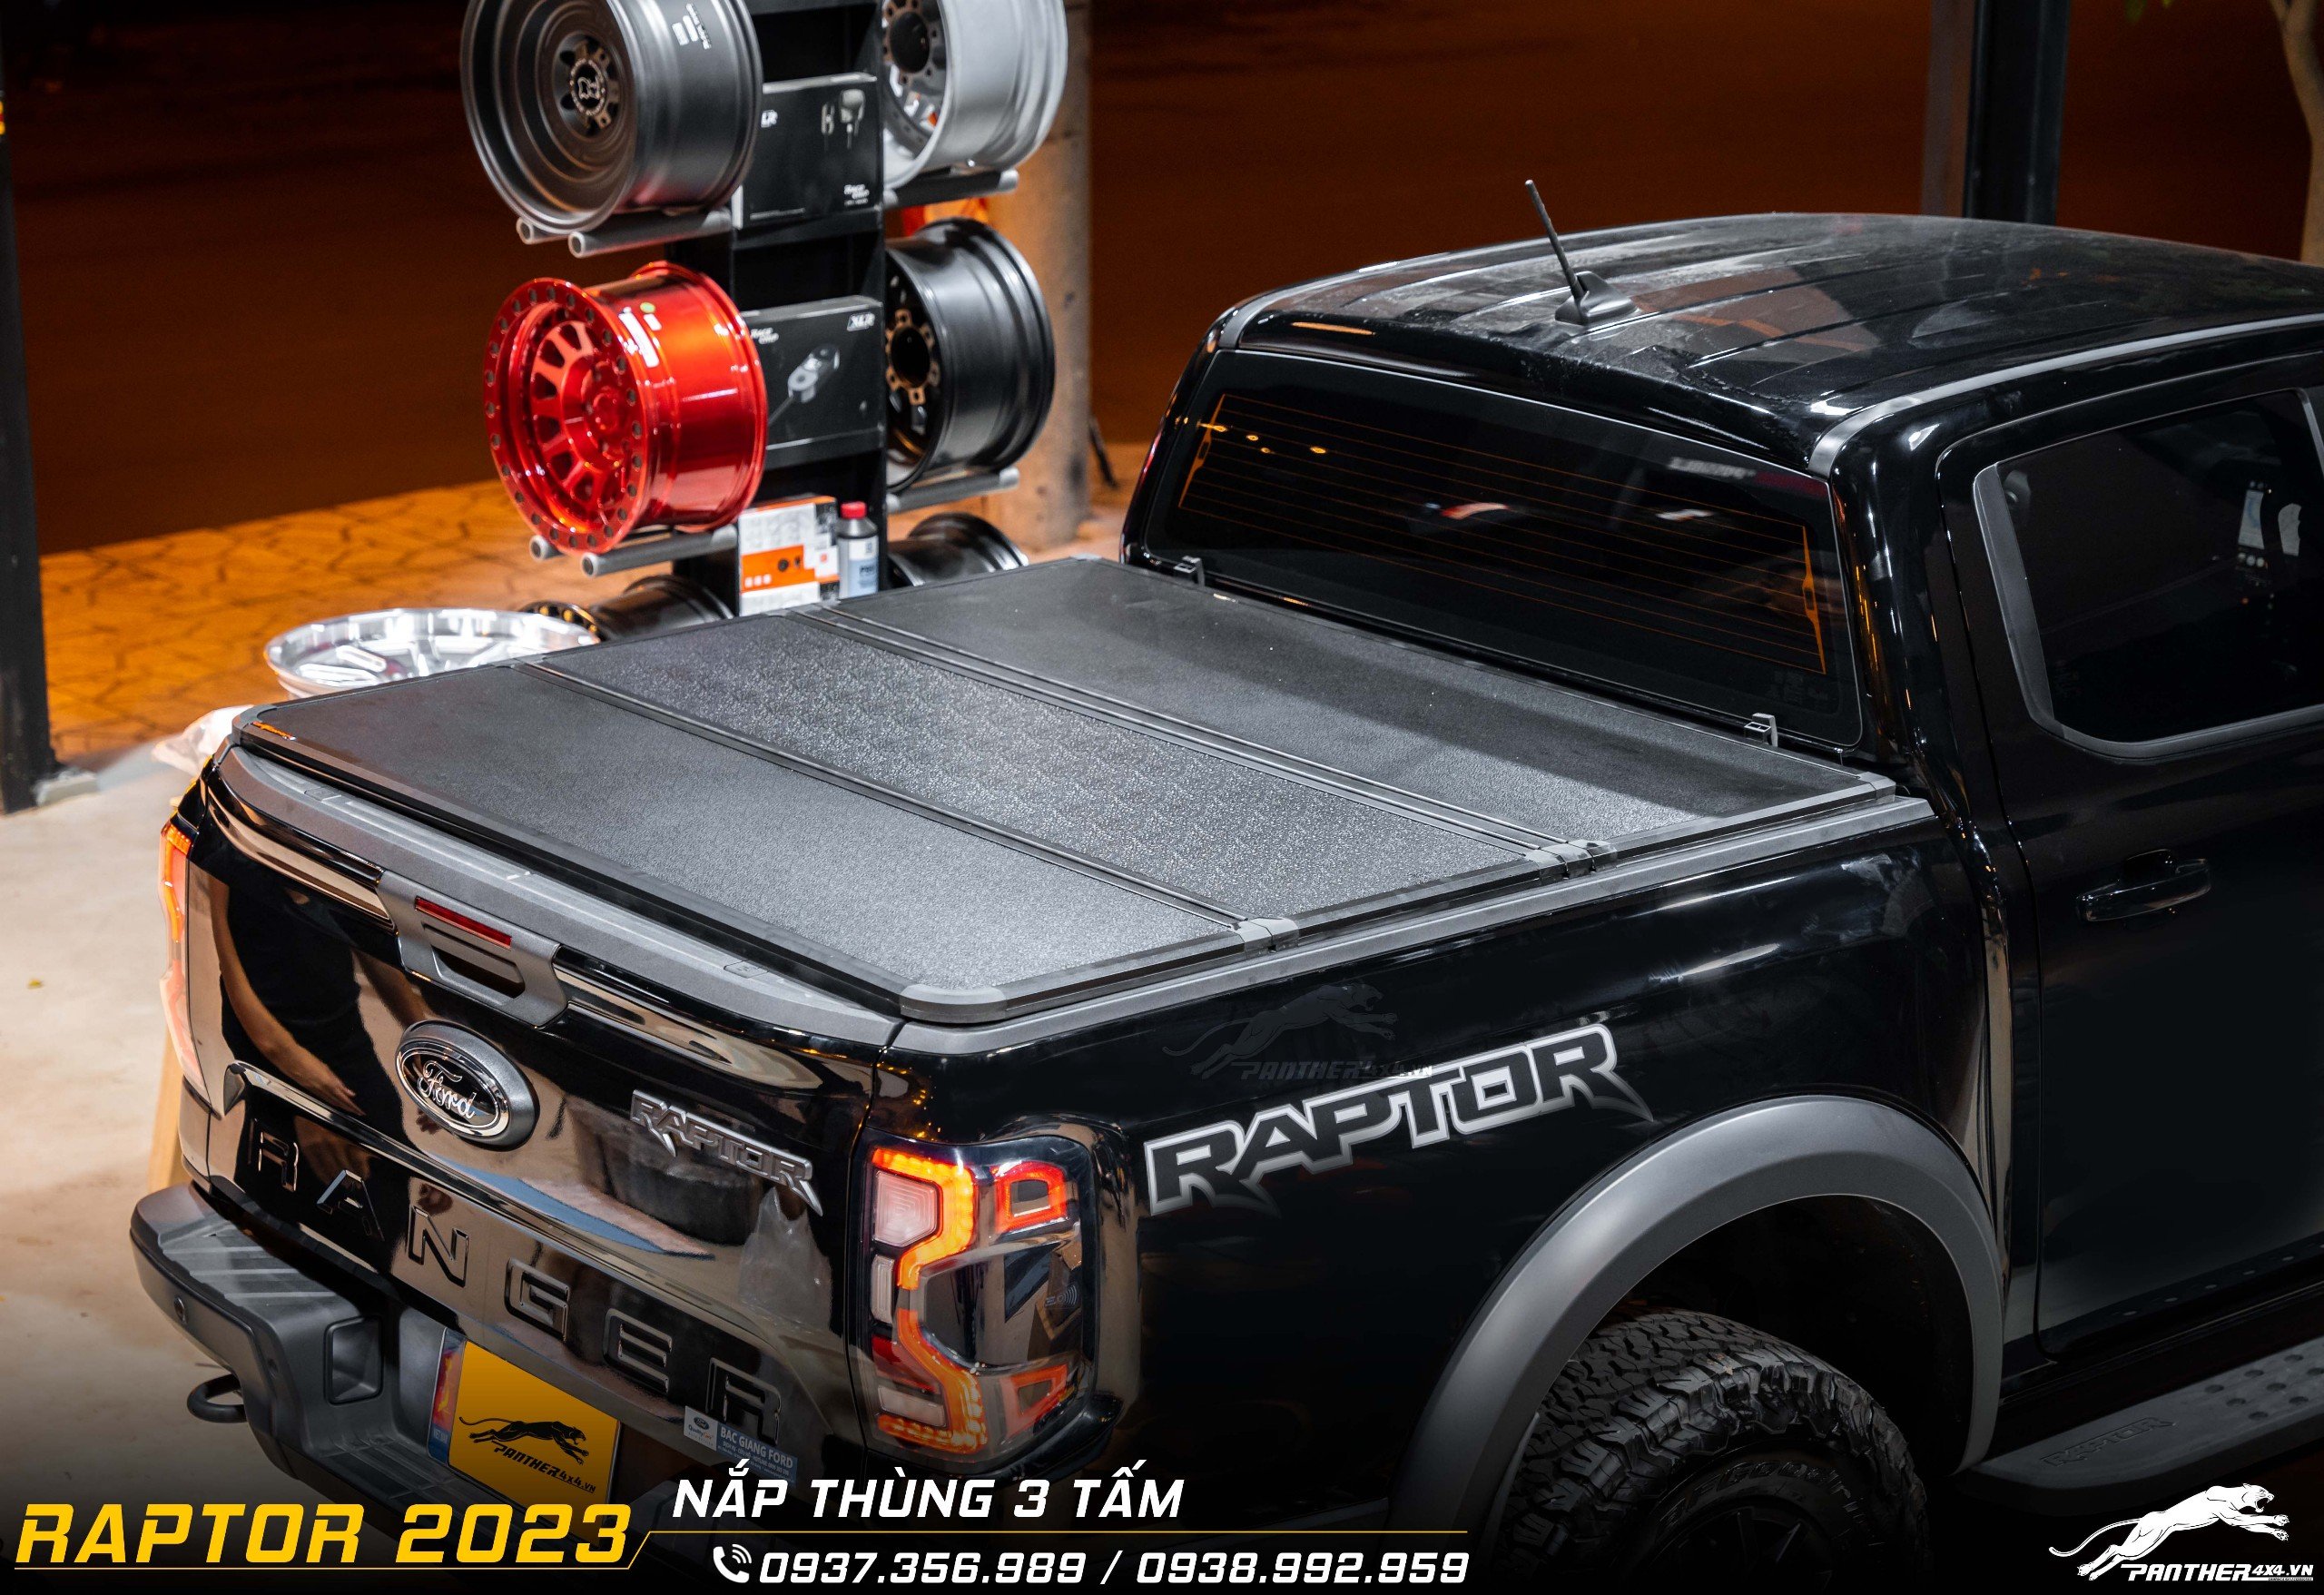 nắp thùng 3 tấm cho Ford Ranger Raptor 2023